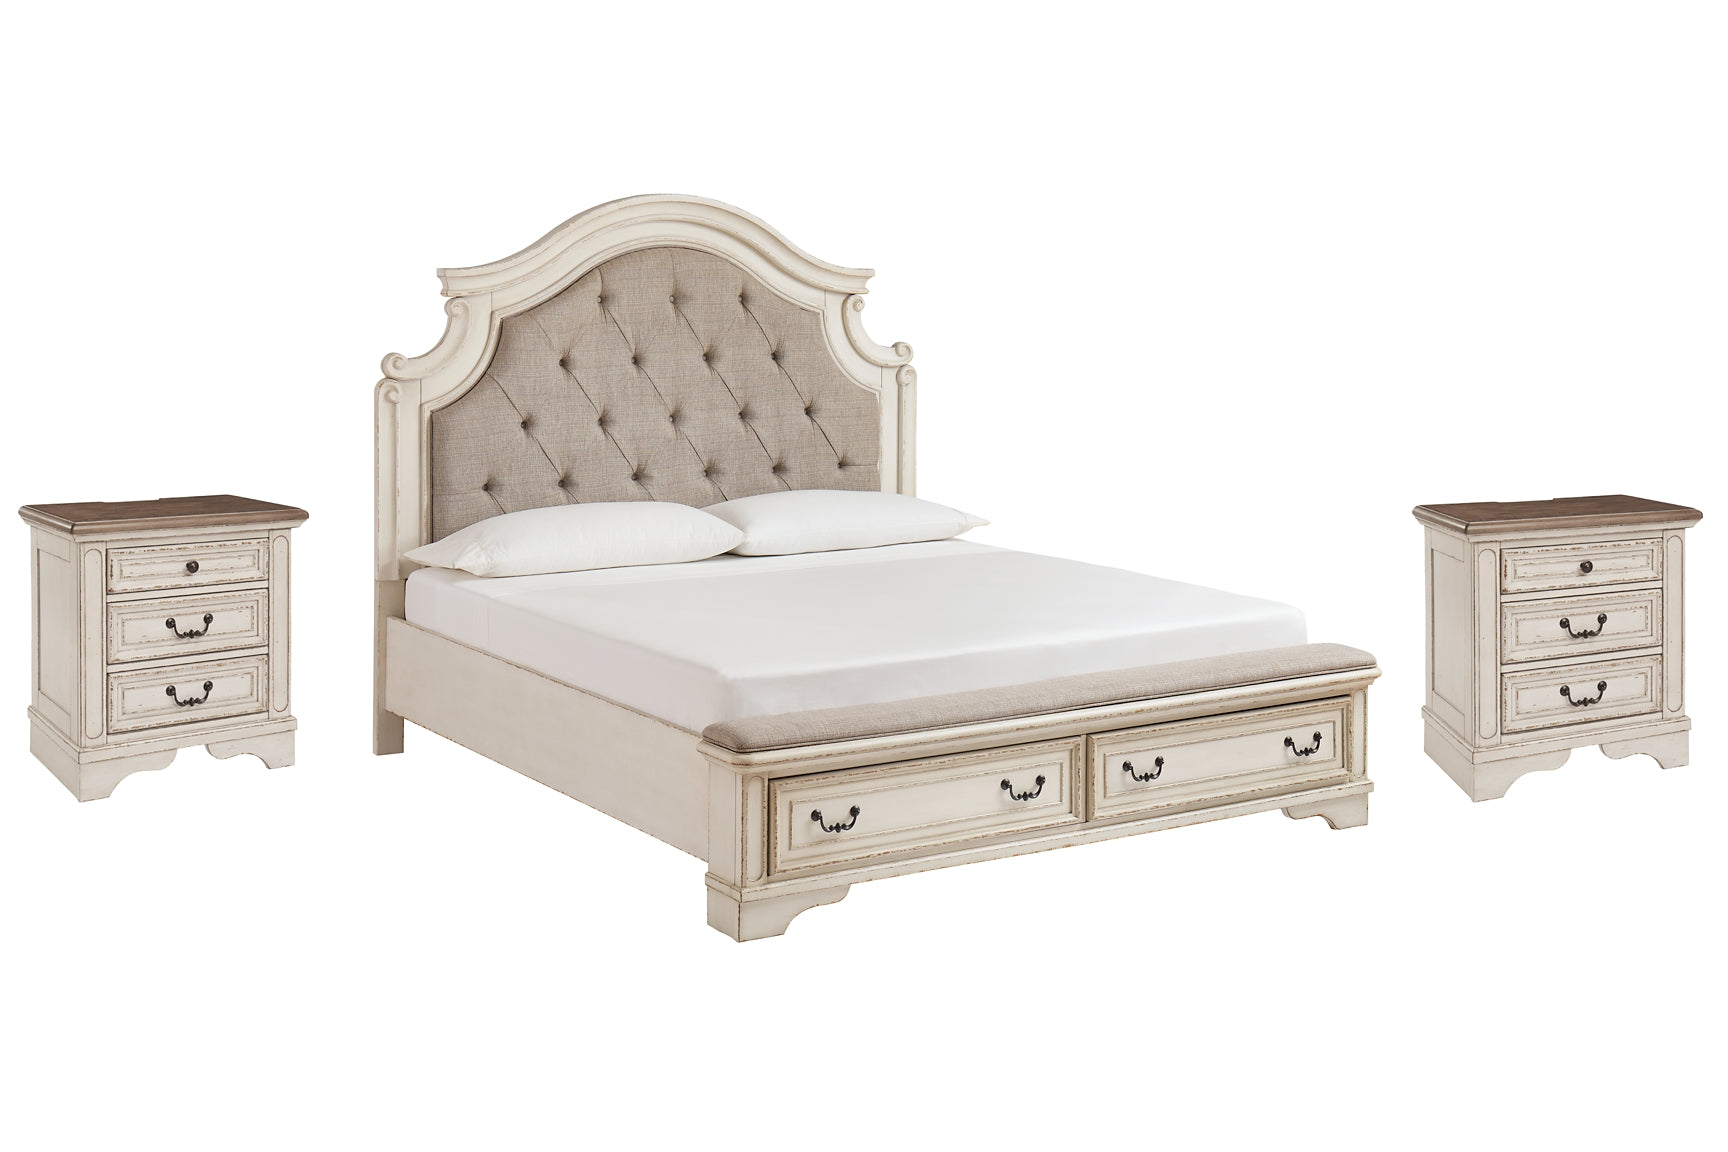 Realyn Queen Upholstered Bed with 2 Nightstands Wilson Furniture (OH)  in Bridgeport, Ohio. Serving Bridgeport, Yorkville, Bellaire, & Avondale